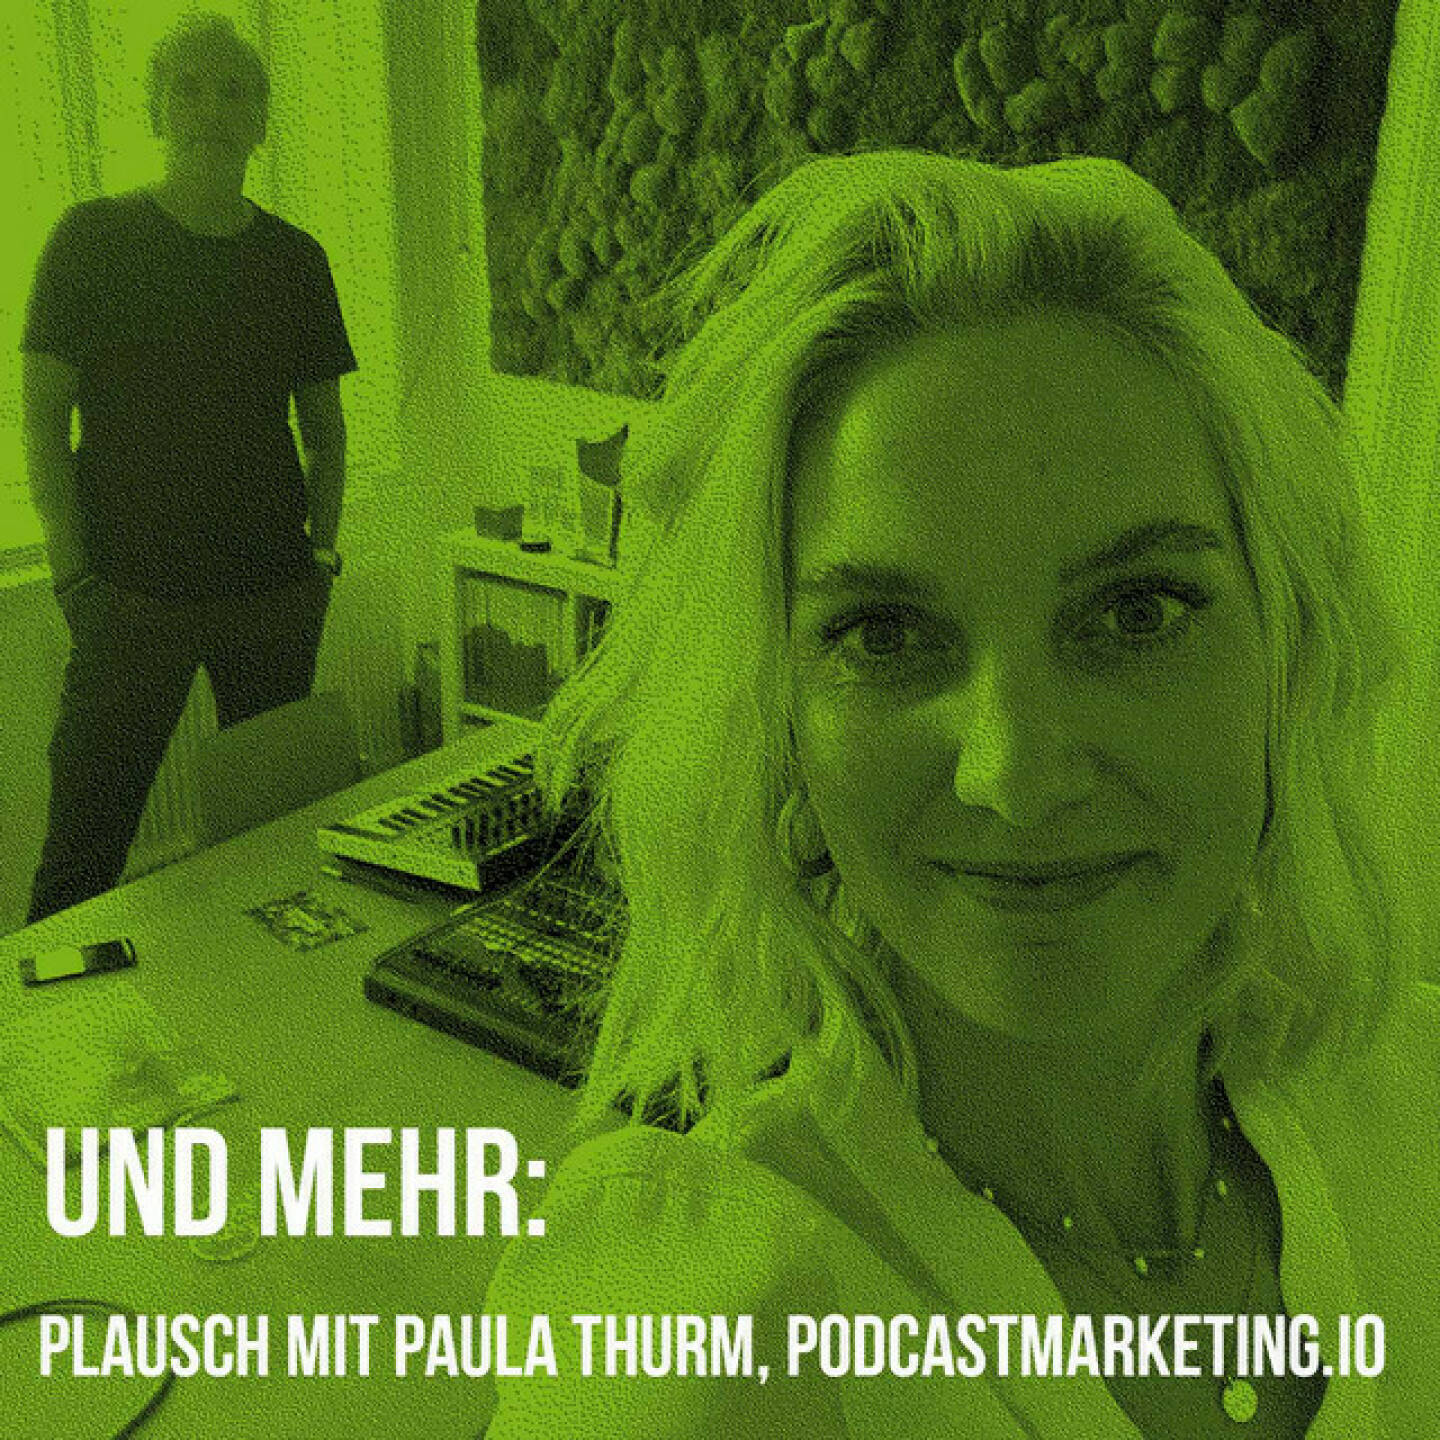 https://open.spotify.com/episode/3NXdzgk3xdZy8zTioDTpB6
Und mehr: Plausch mit Paula Thurm, podcastmarketing.io - <p>Paula Thurm, podcastmarketing.io, hat bisher rund 160 Folgen Ihres „Podcast Marketing Club“-Podcasts (zB Spotify: <a href=https://open.spotify.com/show/4P9gs4IJSzKHQ9kc1SXQoC rel=nofollow>https://open.spotify.com/show/4P9gs4IJSzKHQ9kc1SXQoC</a>? ) veröffentlicht, Start war vor mehr als 2 Jahren. Ich habe mich für Podcast-Wissen interessiert, sie gefunden und alle Folgen mit Tempo 1,2(fach) in 2 Monaten nachgehört, dann in den jüngsten Folgen erfahren, dass Paula nach Wien gezogen ist. Daher: Treffen. Haben wir vor wenigen Tagen bei mir im Studio gemacht und über das Podcasten an sich und Corporate Podcasts im Speziellen gesprochen. Mit vielen Trends und Tipps für Unternehmen von der Expertin. Und meine Pläne im Podcastgeschäft spoilere ich ebenfalls an.</p>